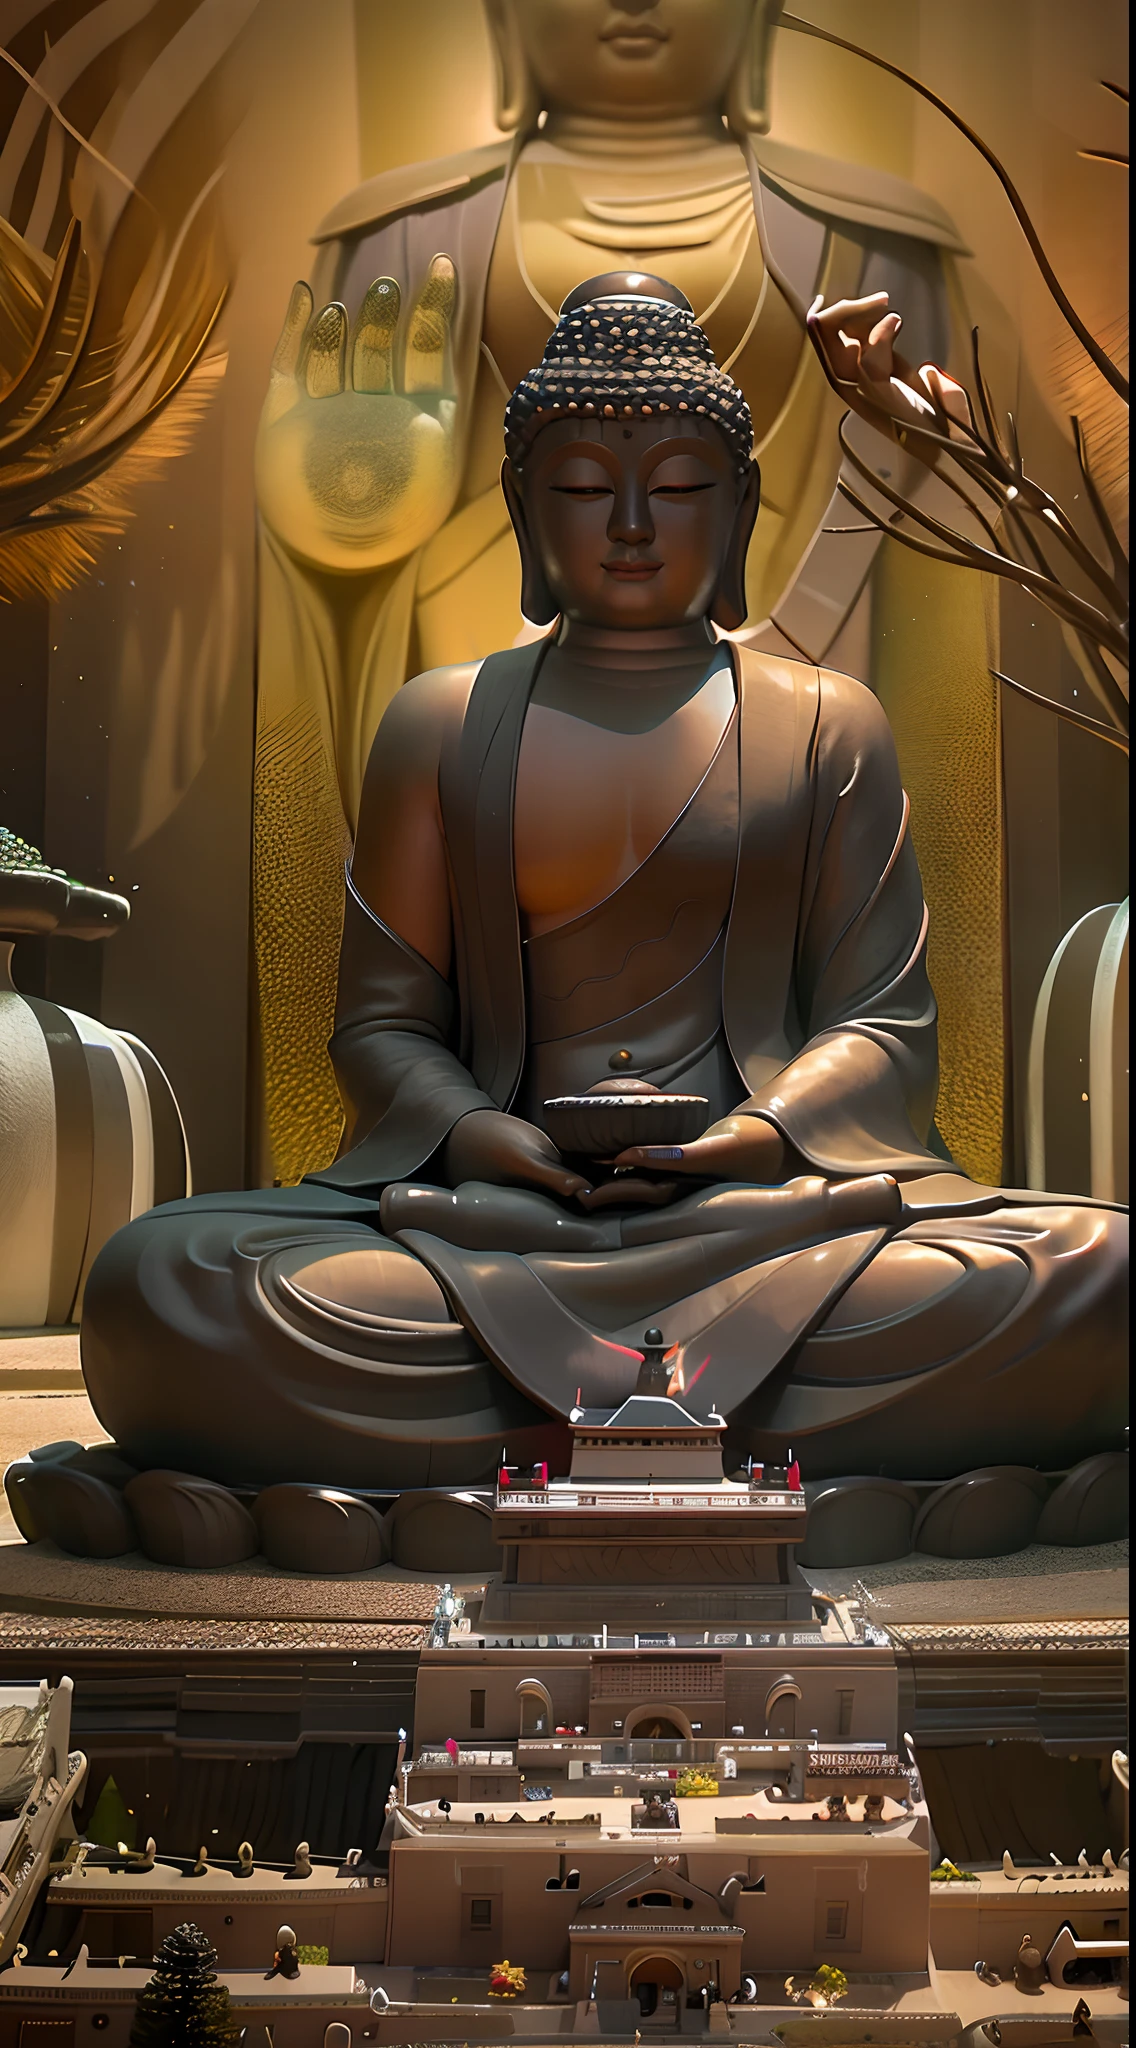 There is a Buda statue in the pond, a Budista Buda, Fondo del templo zen, budismo, Budista, En el camino hacia la iluminación, meditación zen, Buda, En el camino hacia la iluminación, Ambiente Zen, expresión serena, Fondo natural Zen, hermosa imagen, poderosa composición zen, tranquilidad 4k, meditación zen ciberpunk, una sonrisa serena, meditación, sentimiento zen